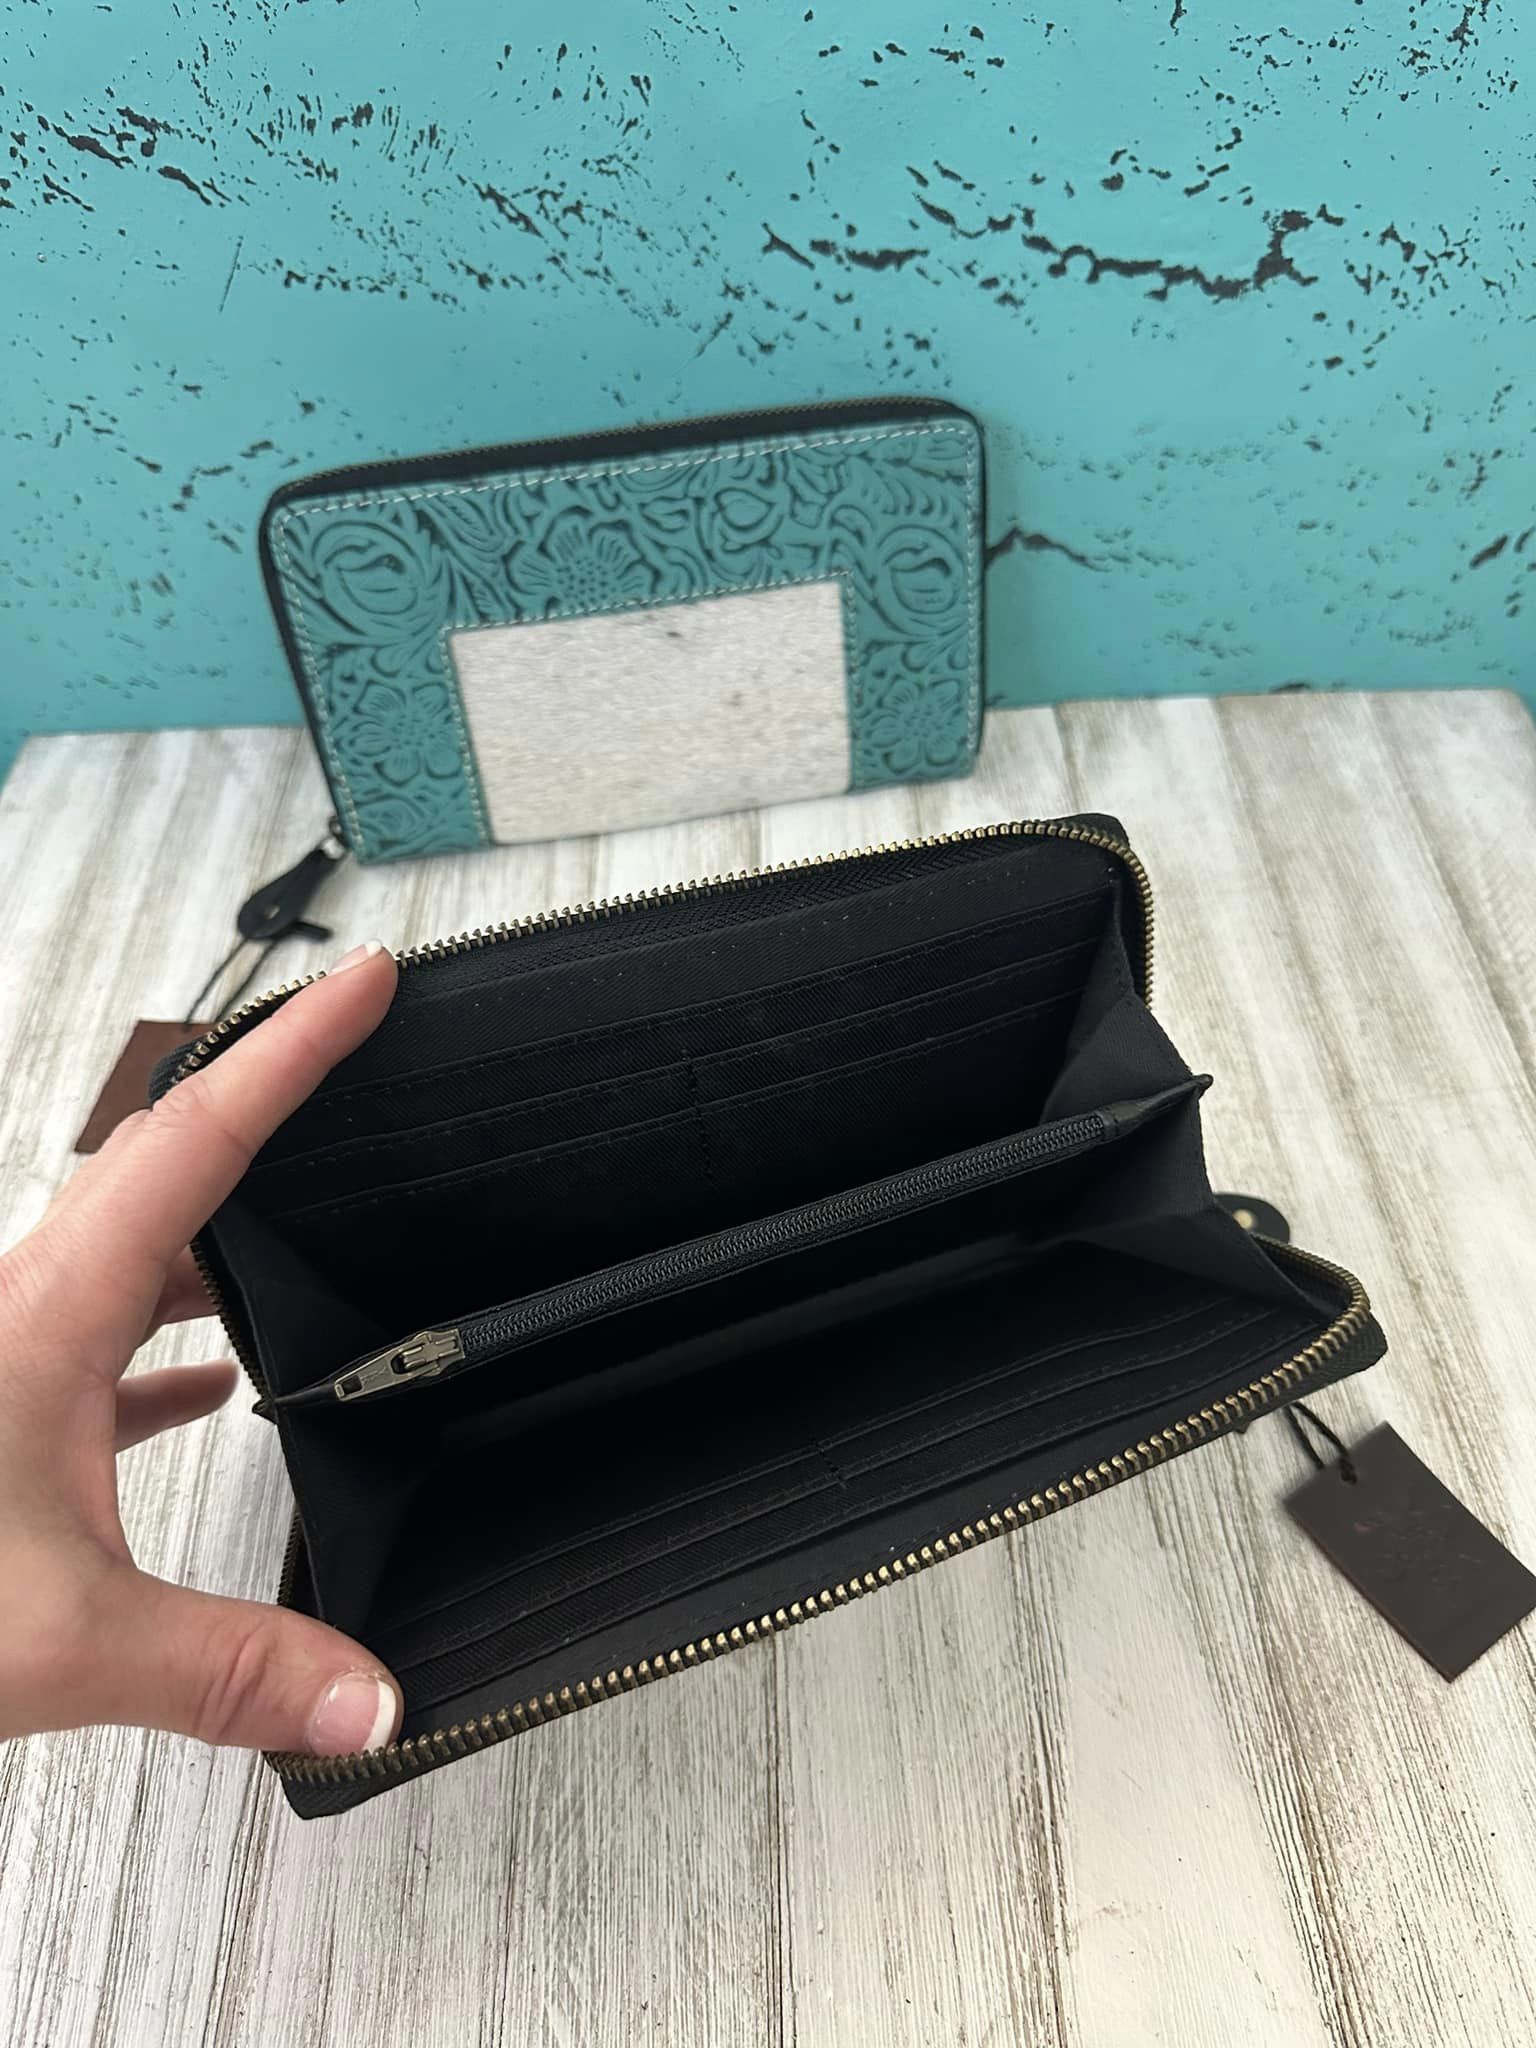 Aurora Wallet